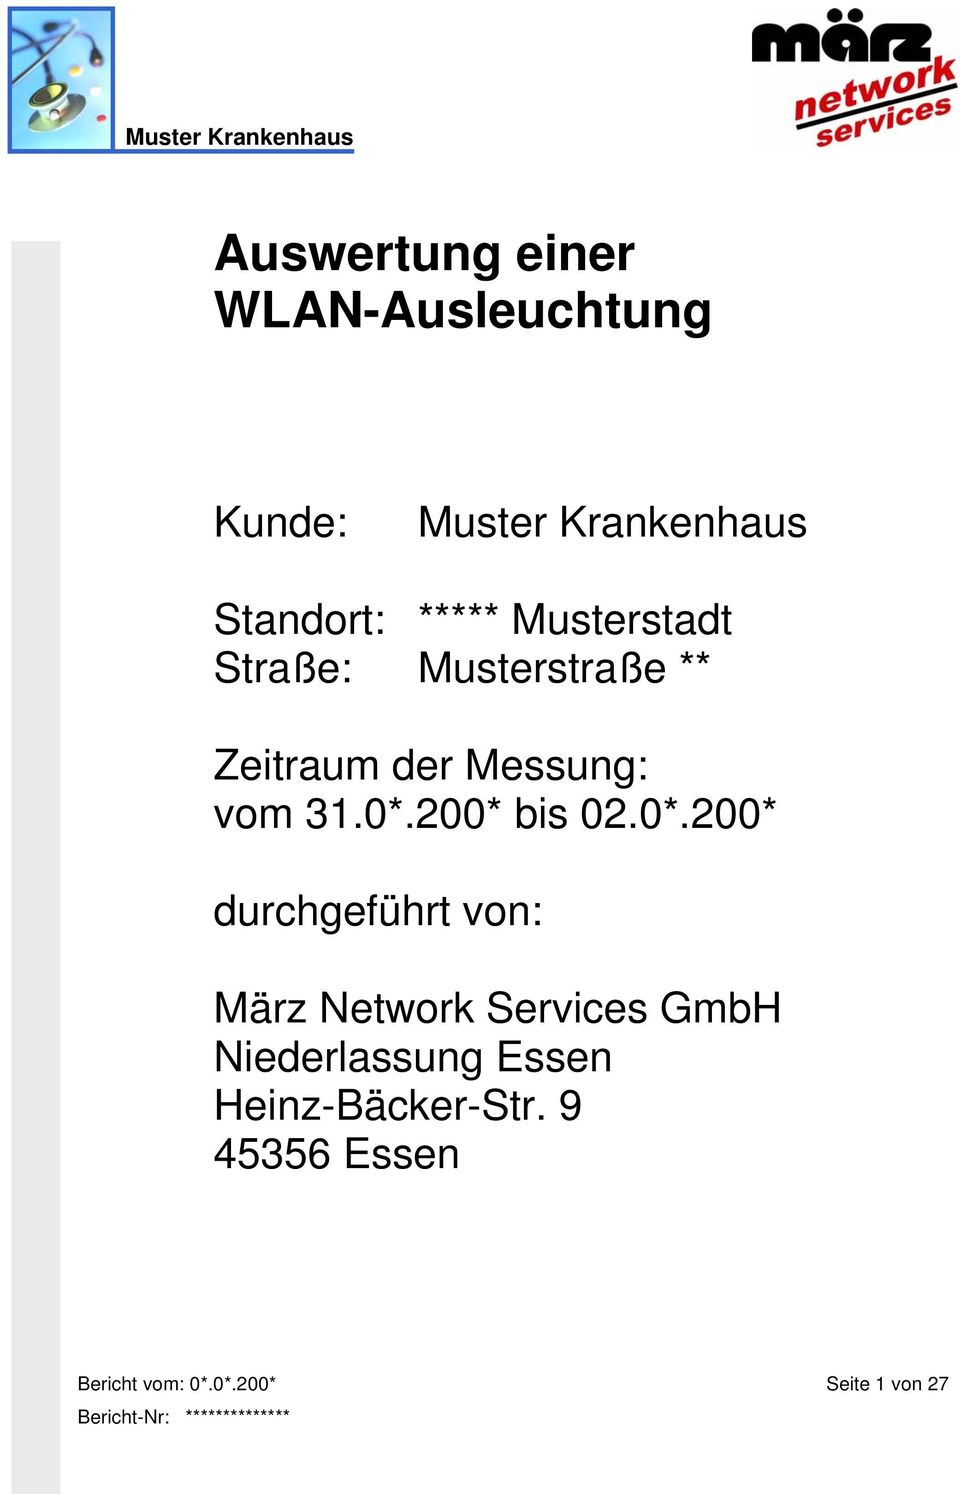 200* bis 02.0*.200* durchgeführt von: März Network Services GmbH